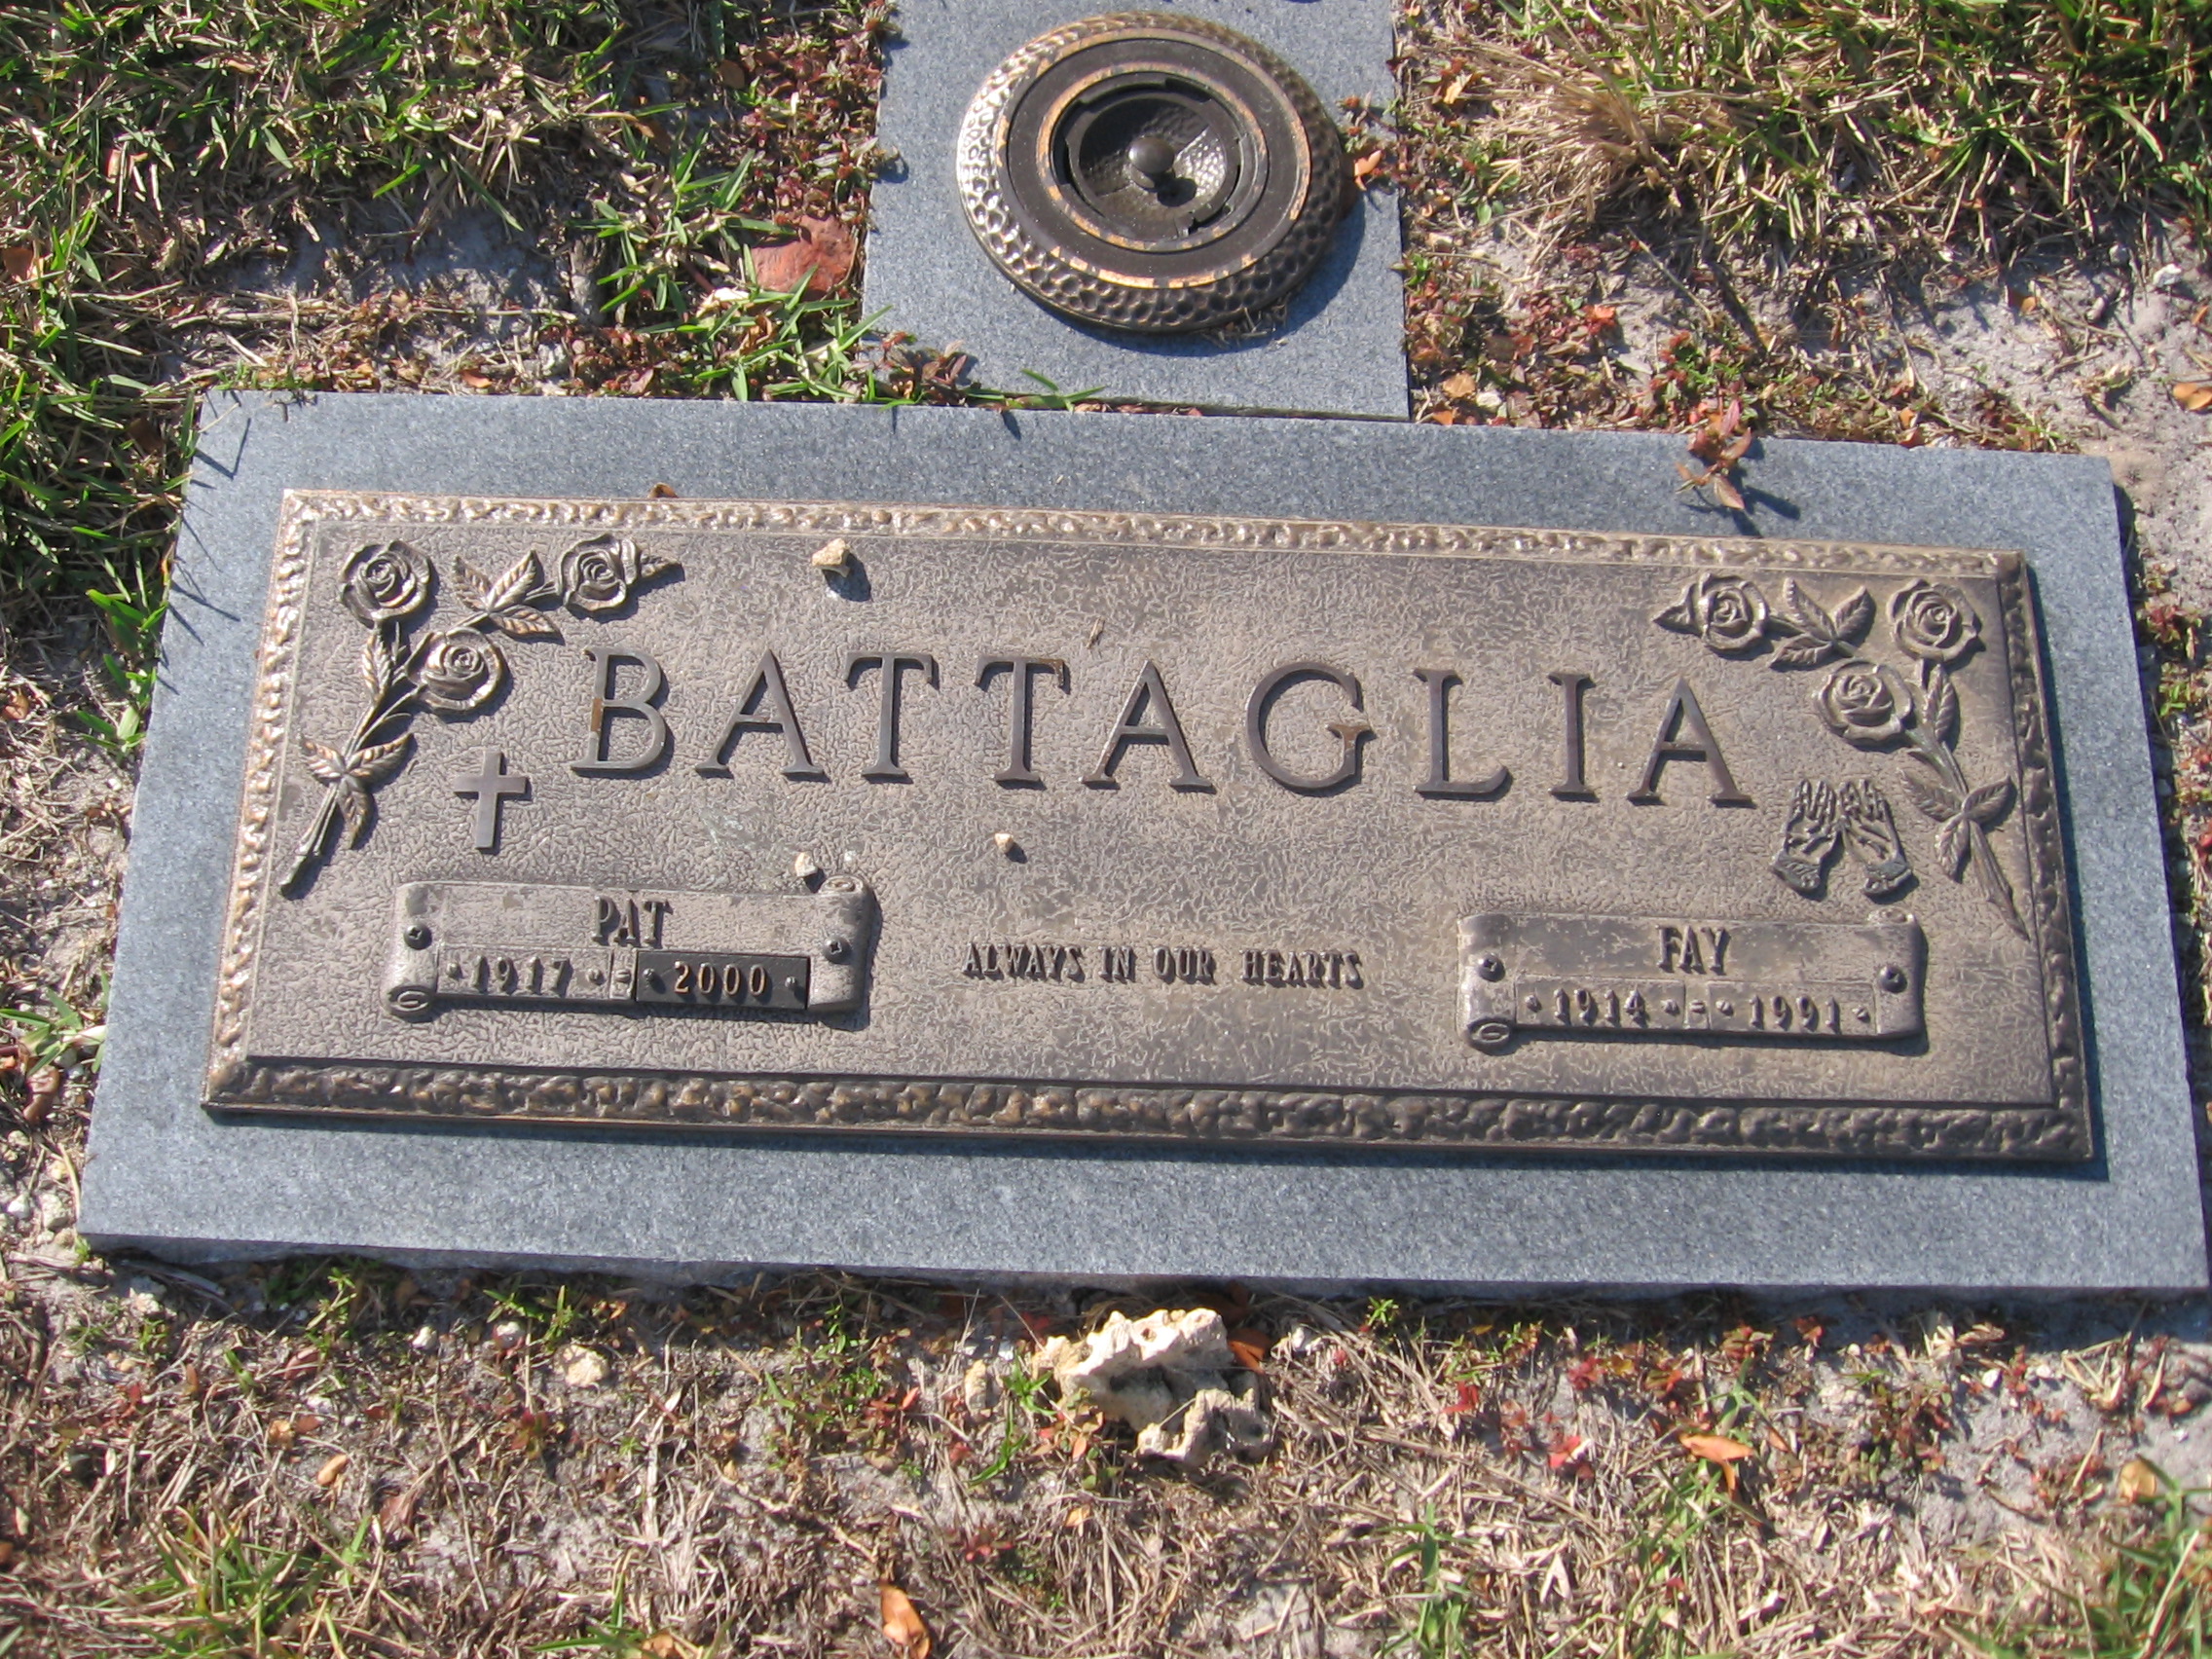 Fay Battaglia